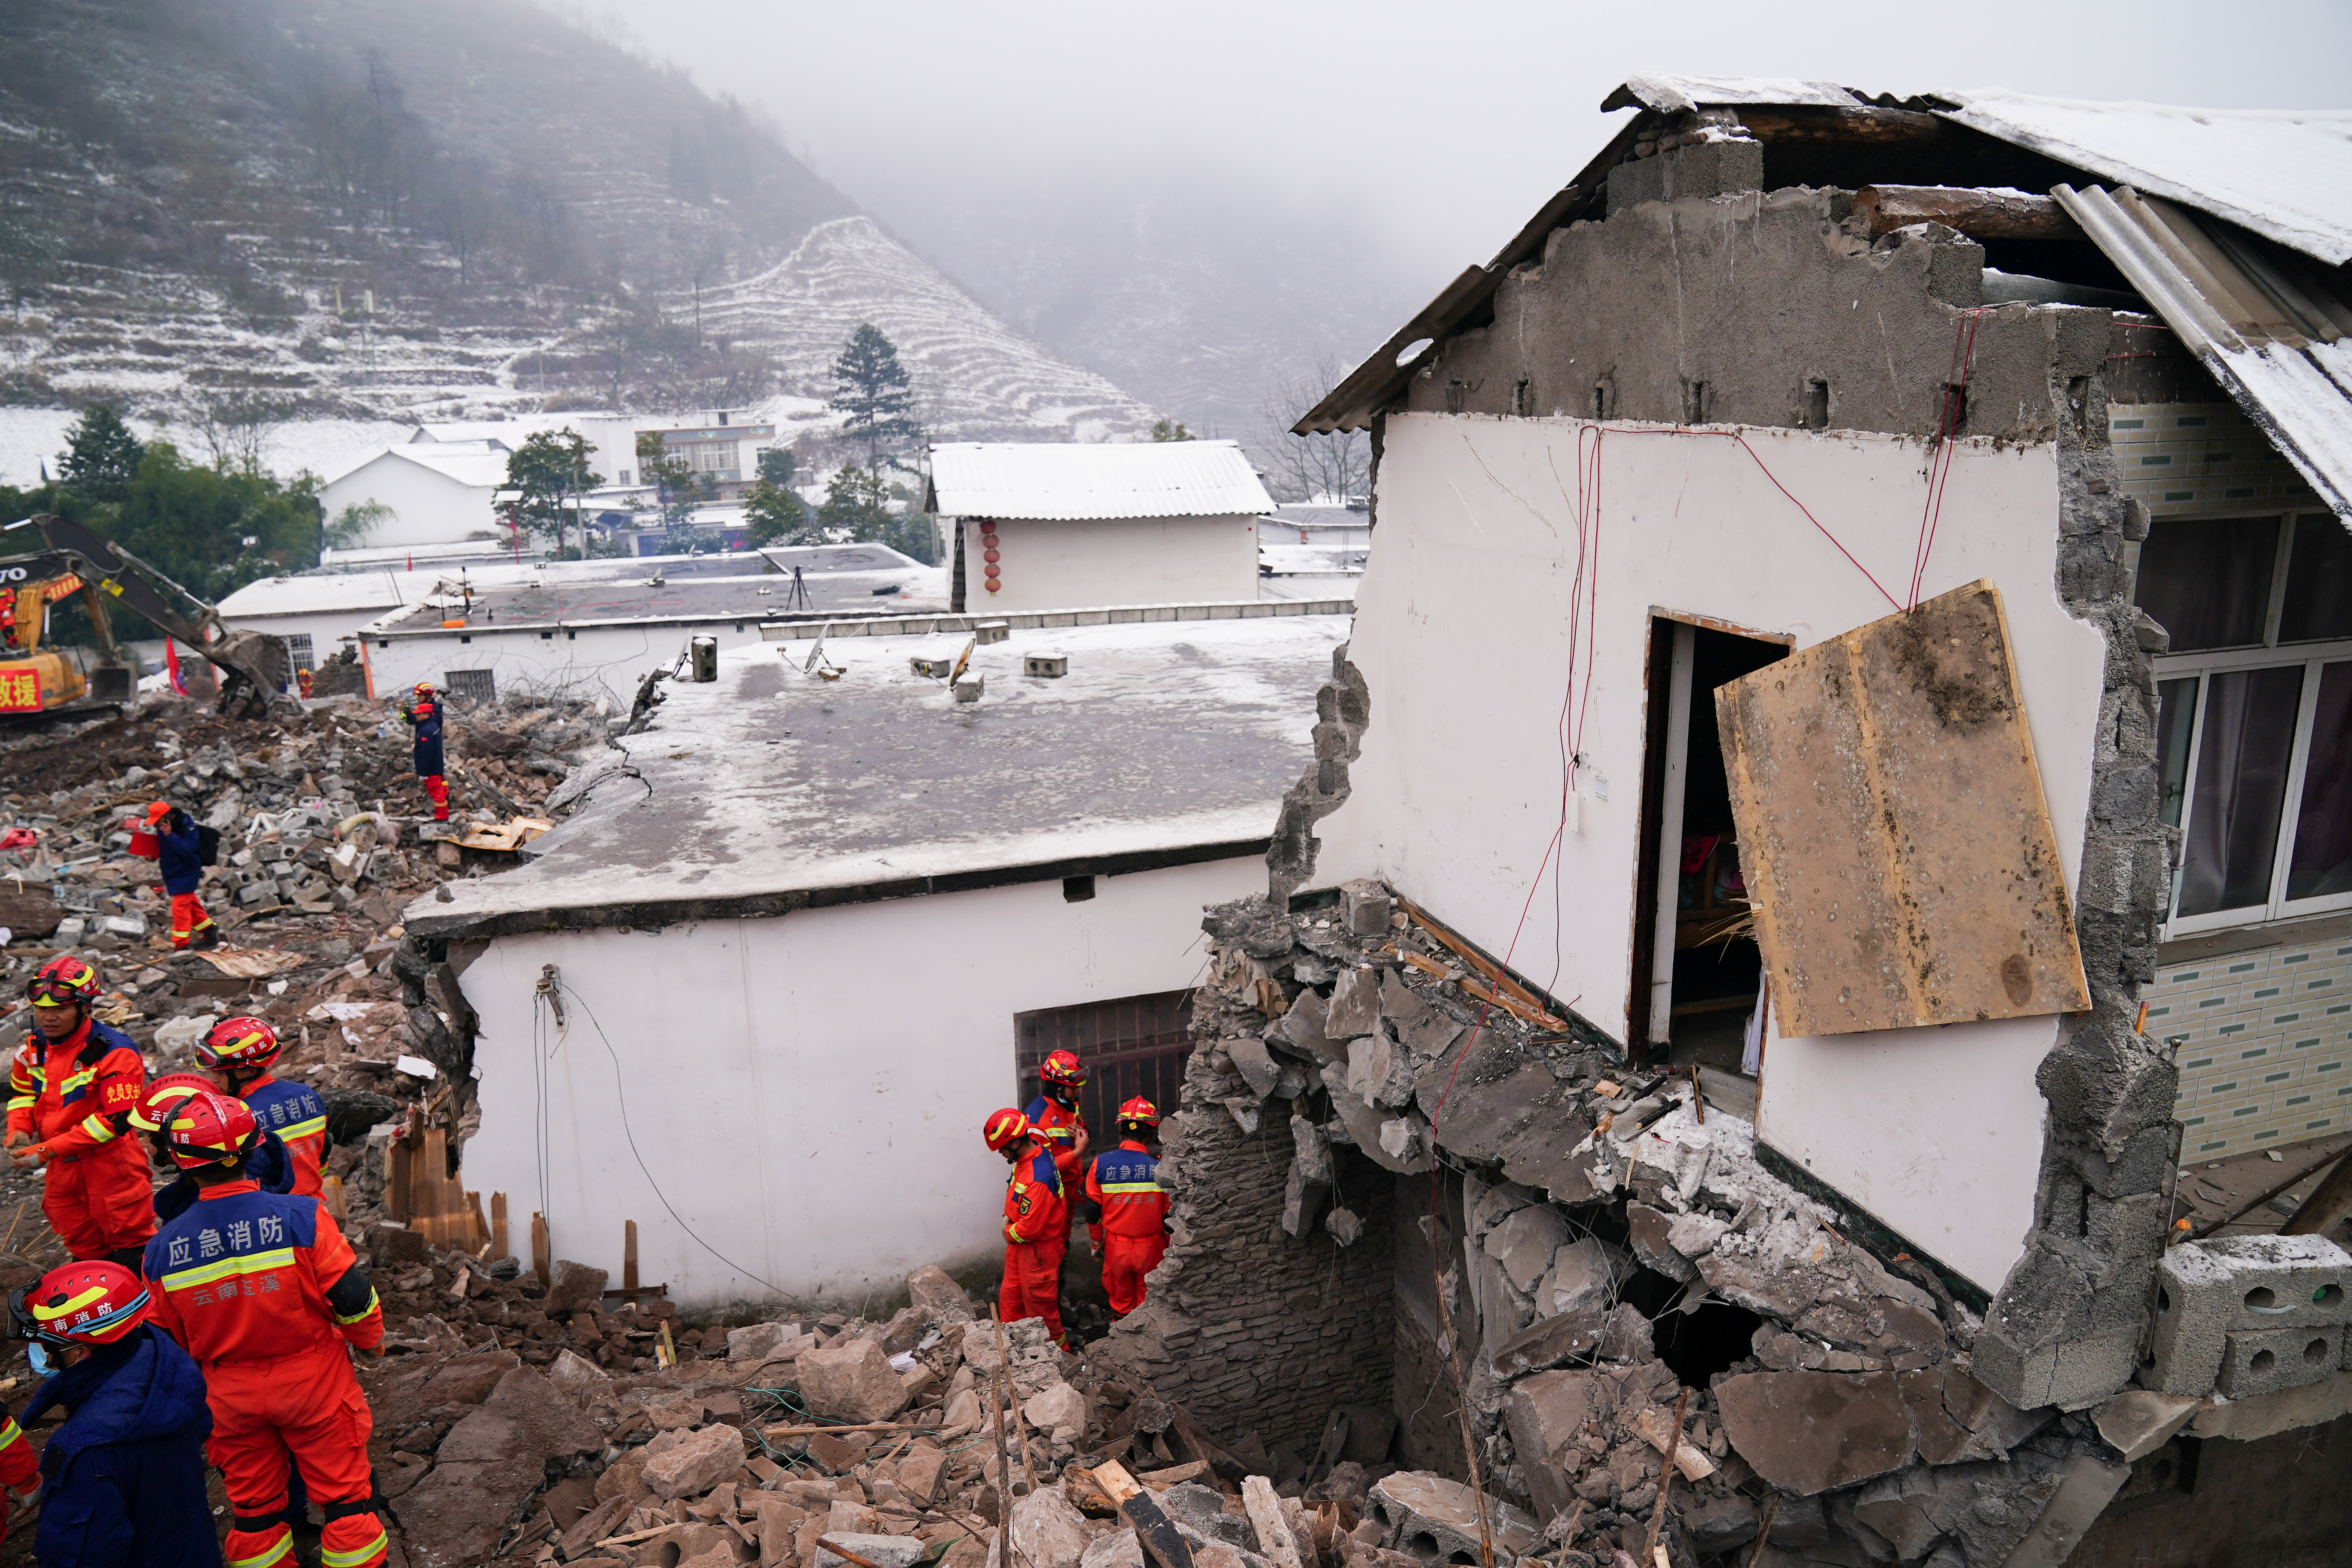 चीन के इस प्रांत में अचानक आ गया भयंकर भूकंप, रिक्टर स्केल पर 5.2 इंटेंसिटी…

Earthquake in China A severe earthquake suddenly occurred in this province of China, 5.2 intensity on the Richter scale…